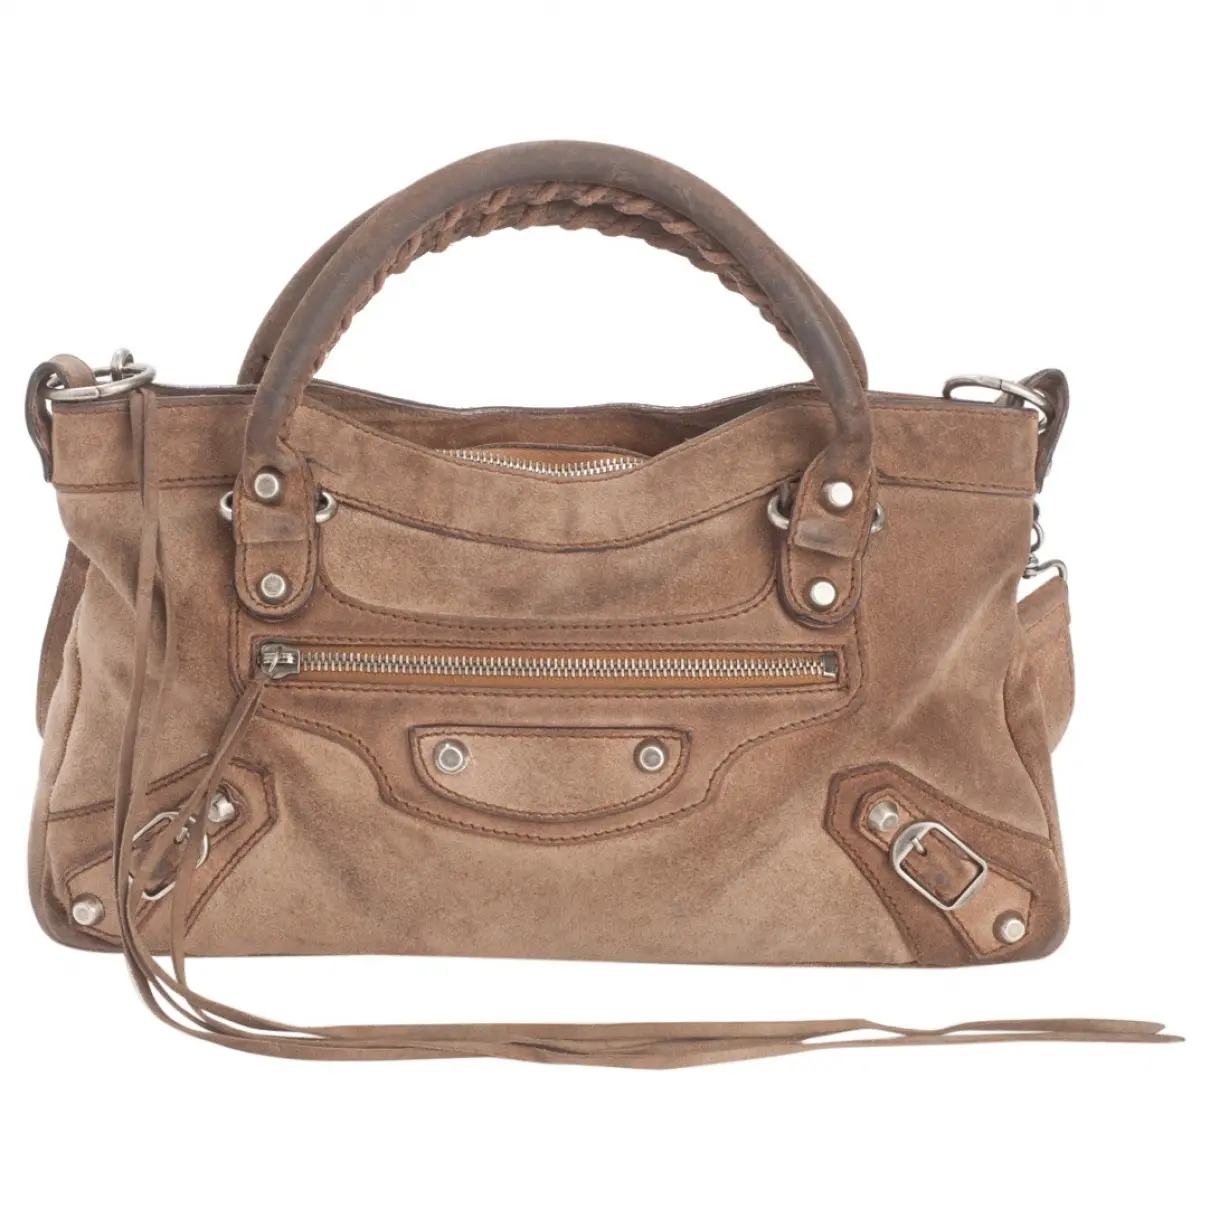 First handbag Balenciaga